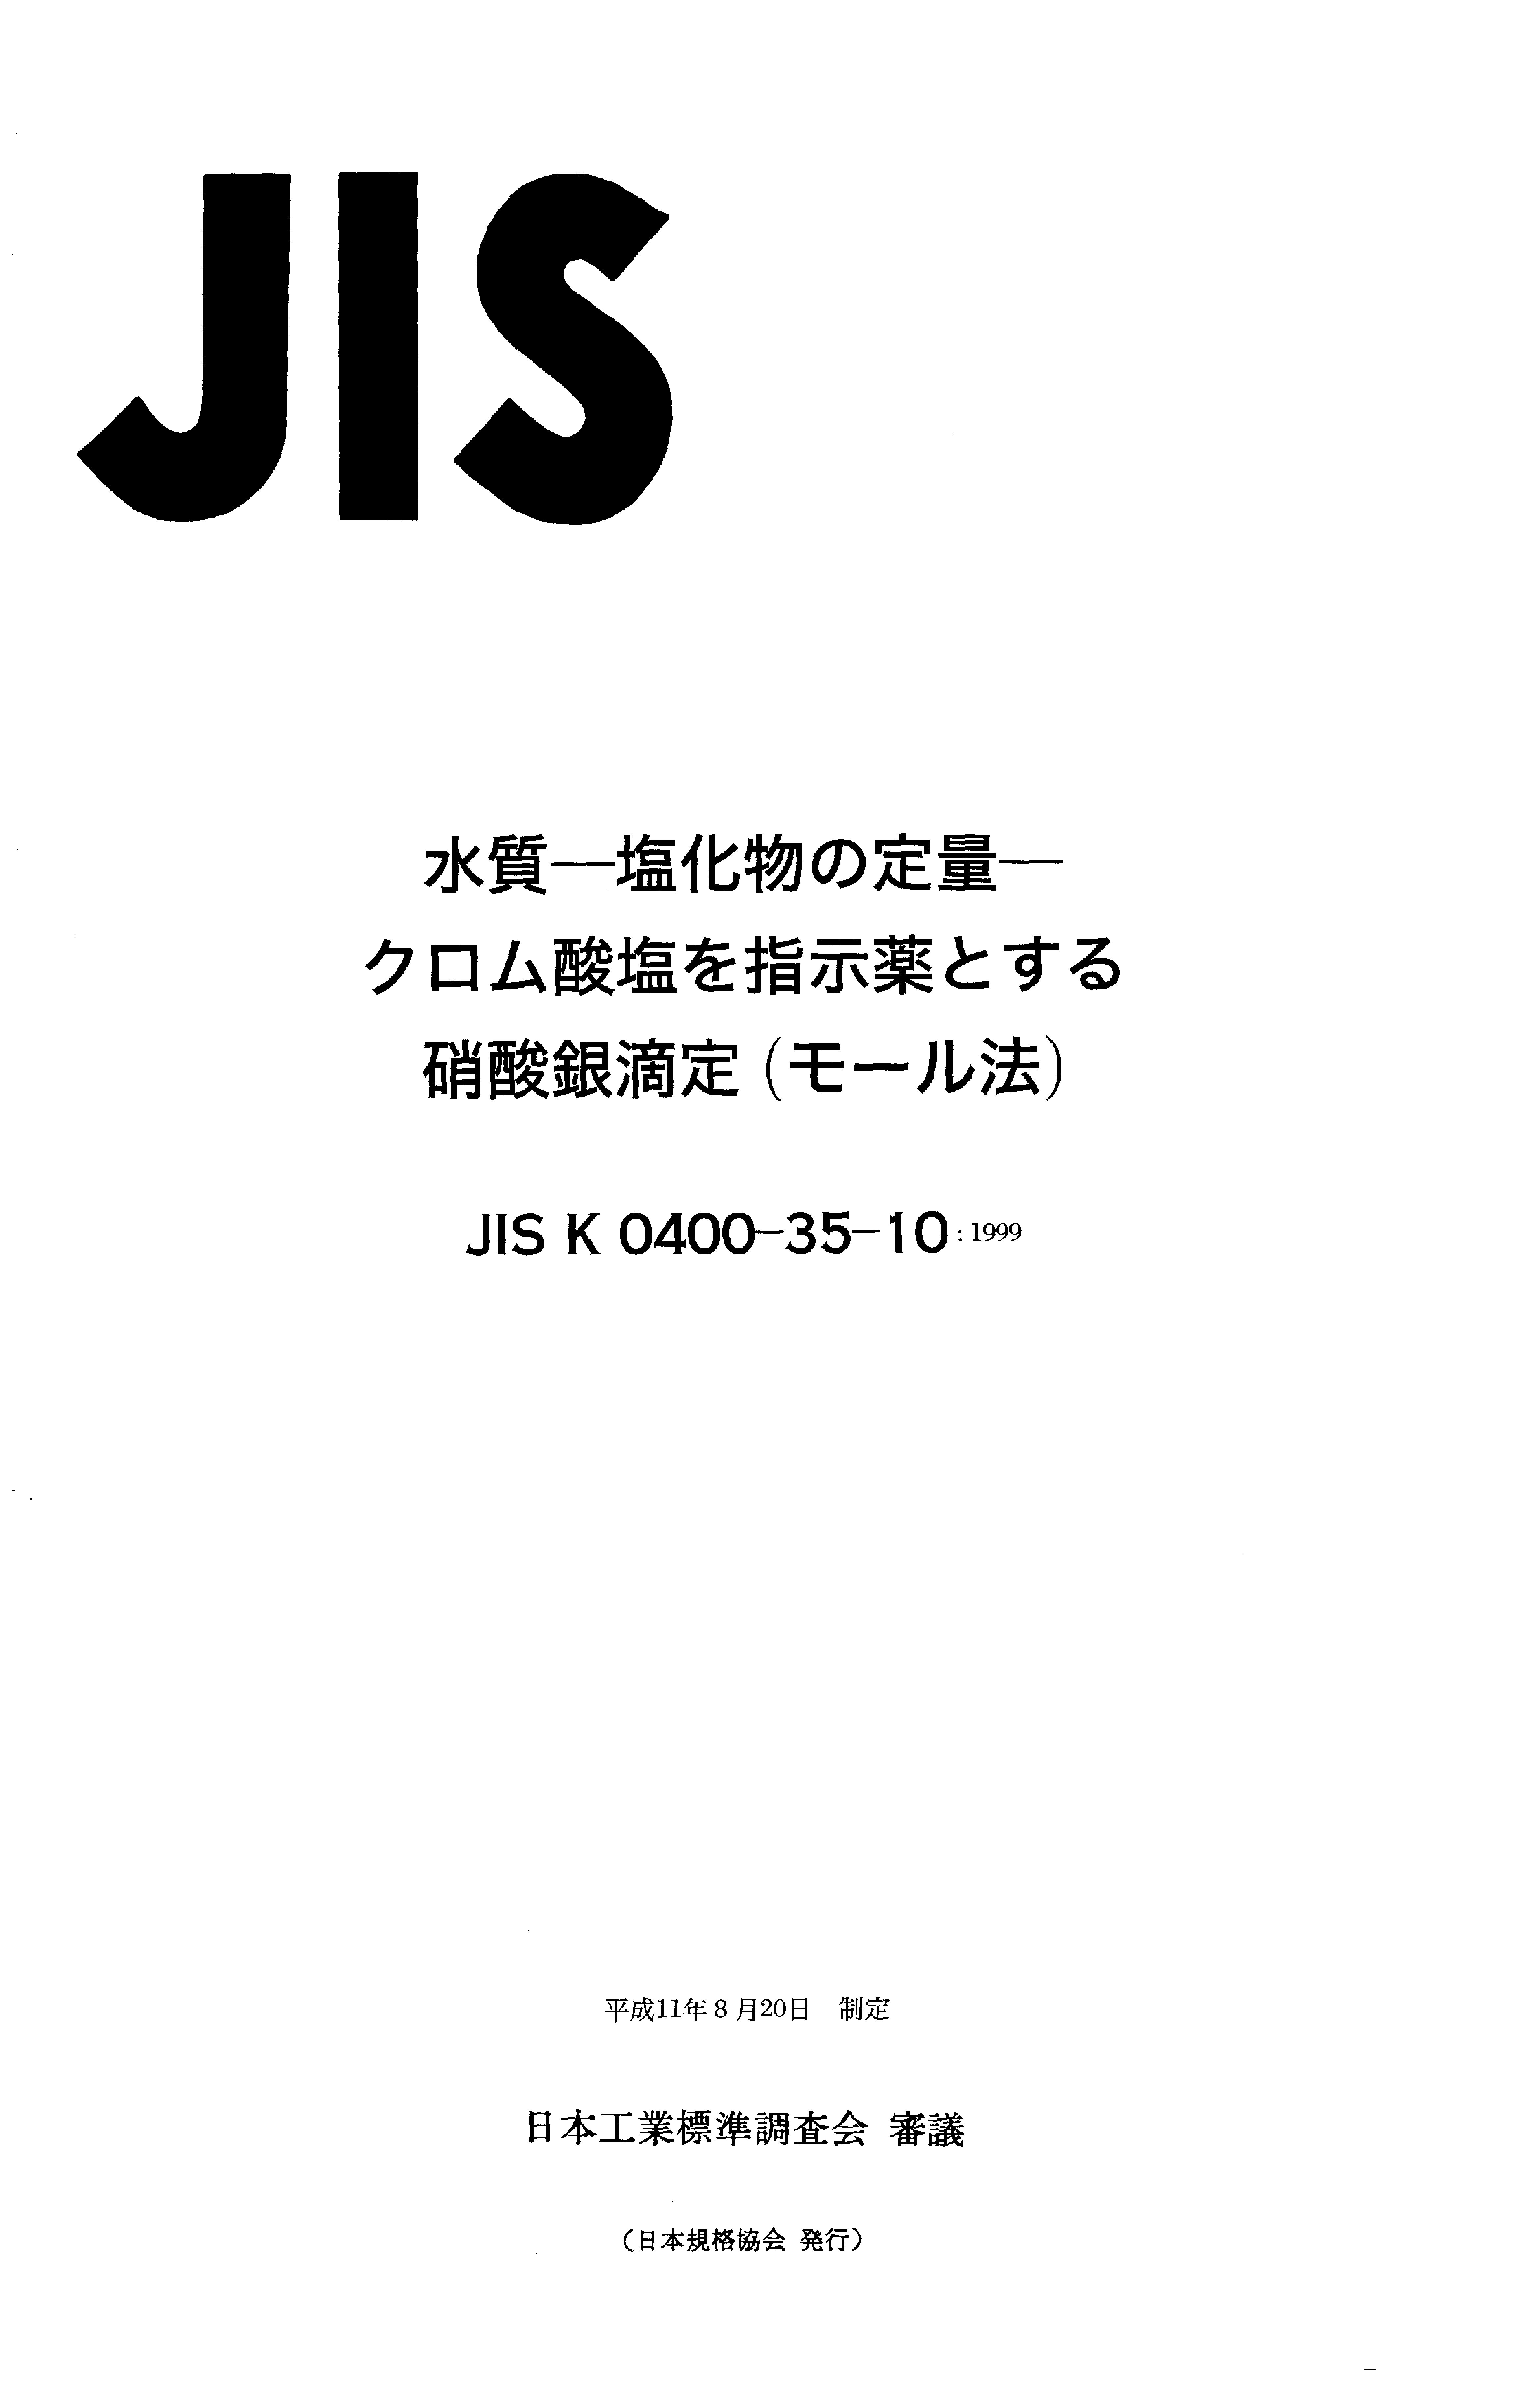 JIS K 0400-35-10:1999